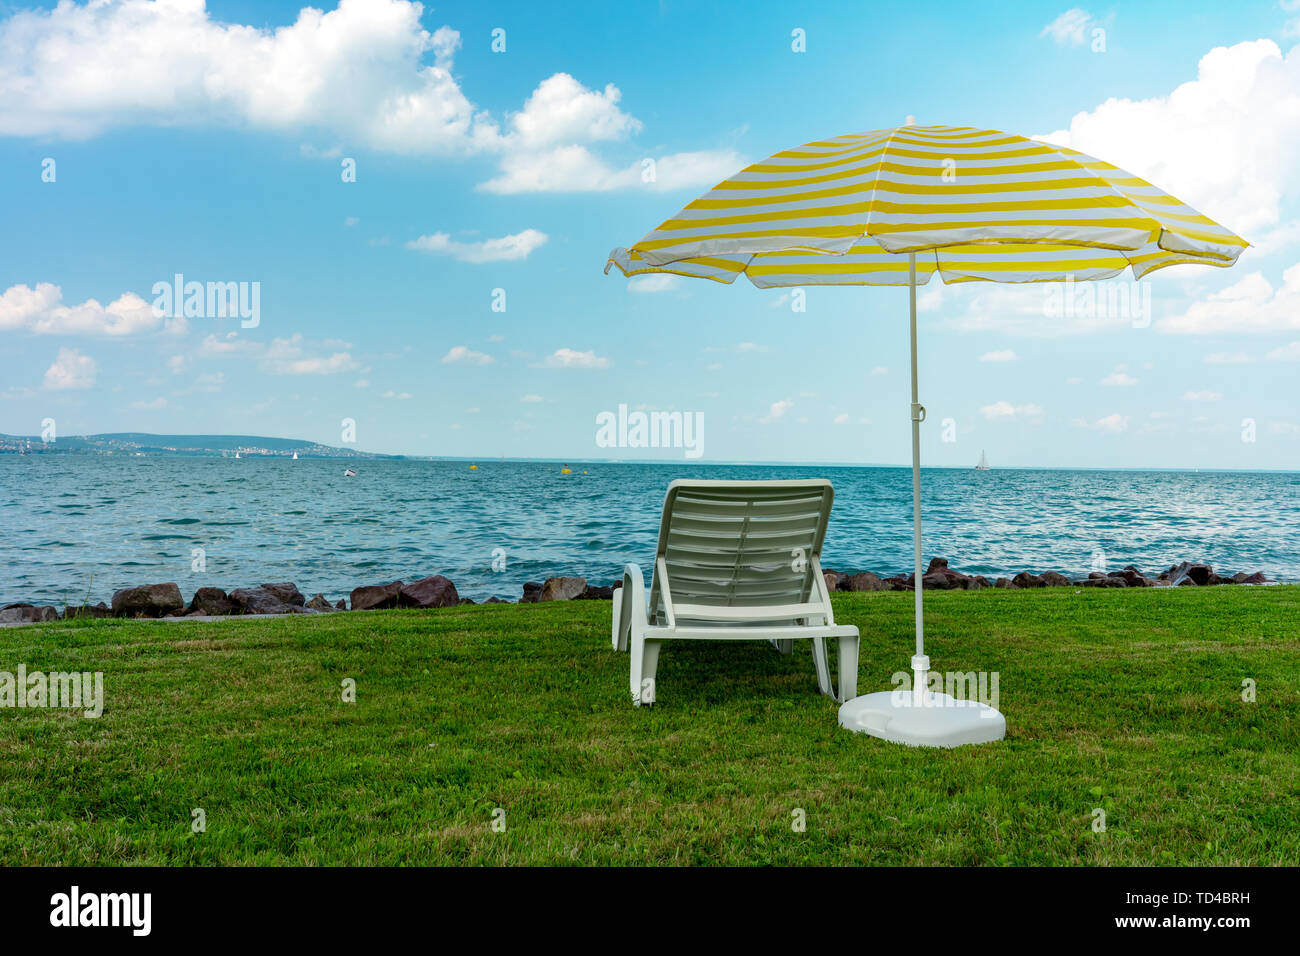 Stilvolle liege Kunststoff liege mit gelben Streifen Sonnenschirm Sonnenschirm auf dem grünen Rasen am Strand im Sommer unter freiem Himmel. Vorgesehen für die Sonnenliege Stockfoto